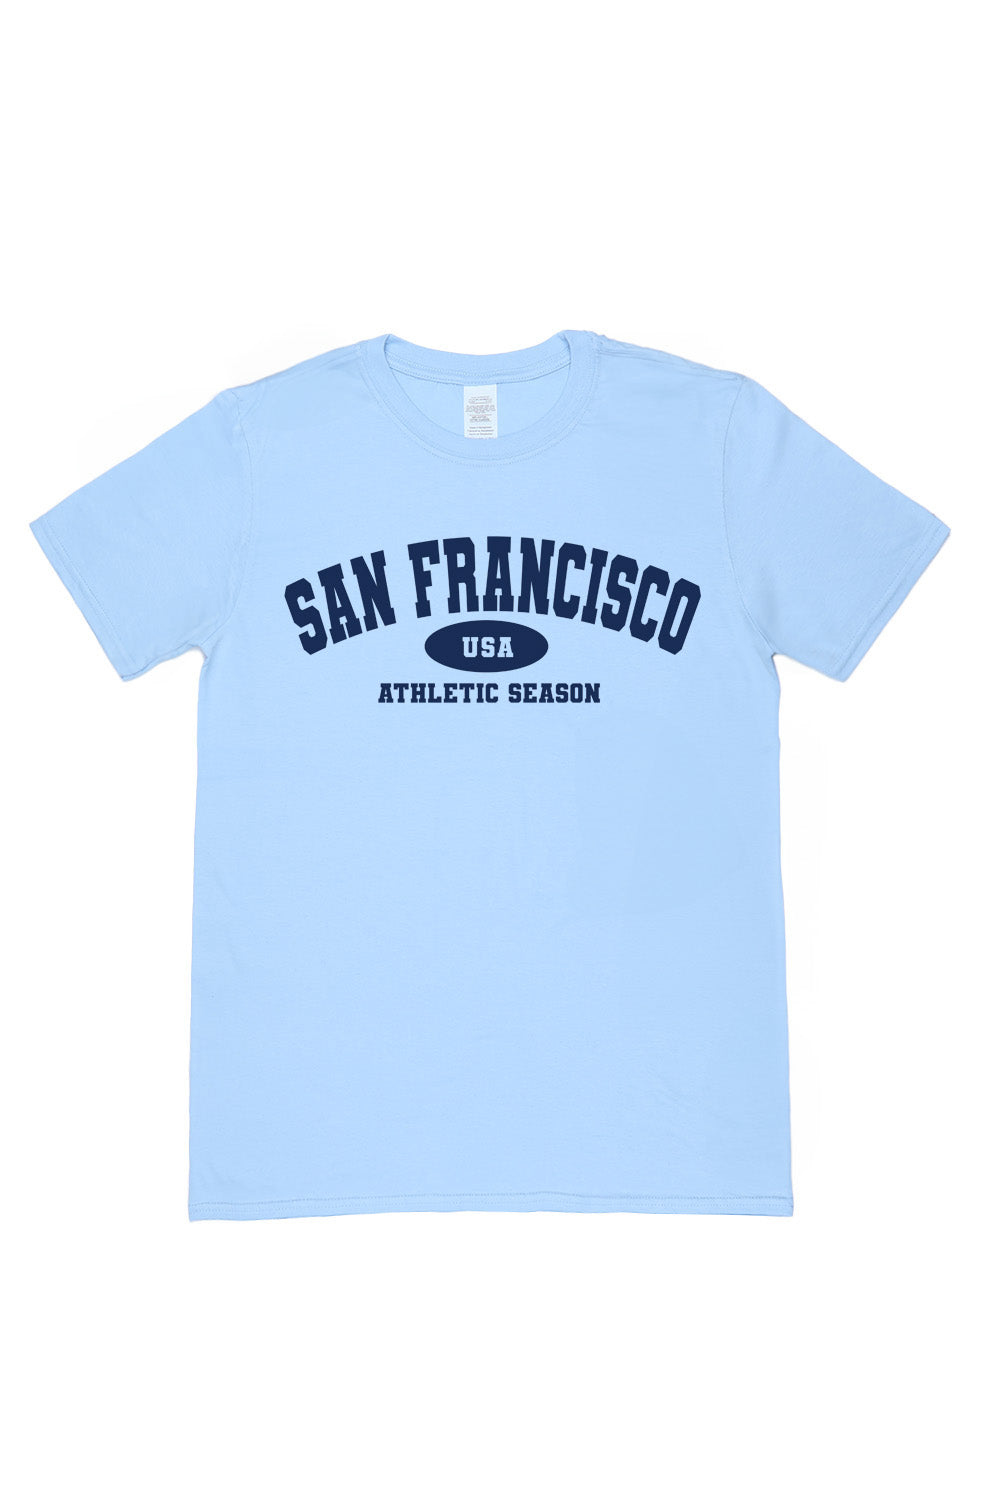 San Francisco T-Shirt in Light Blue (Custom Packs)